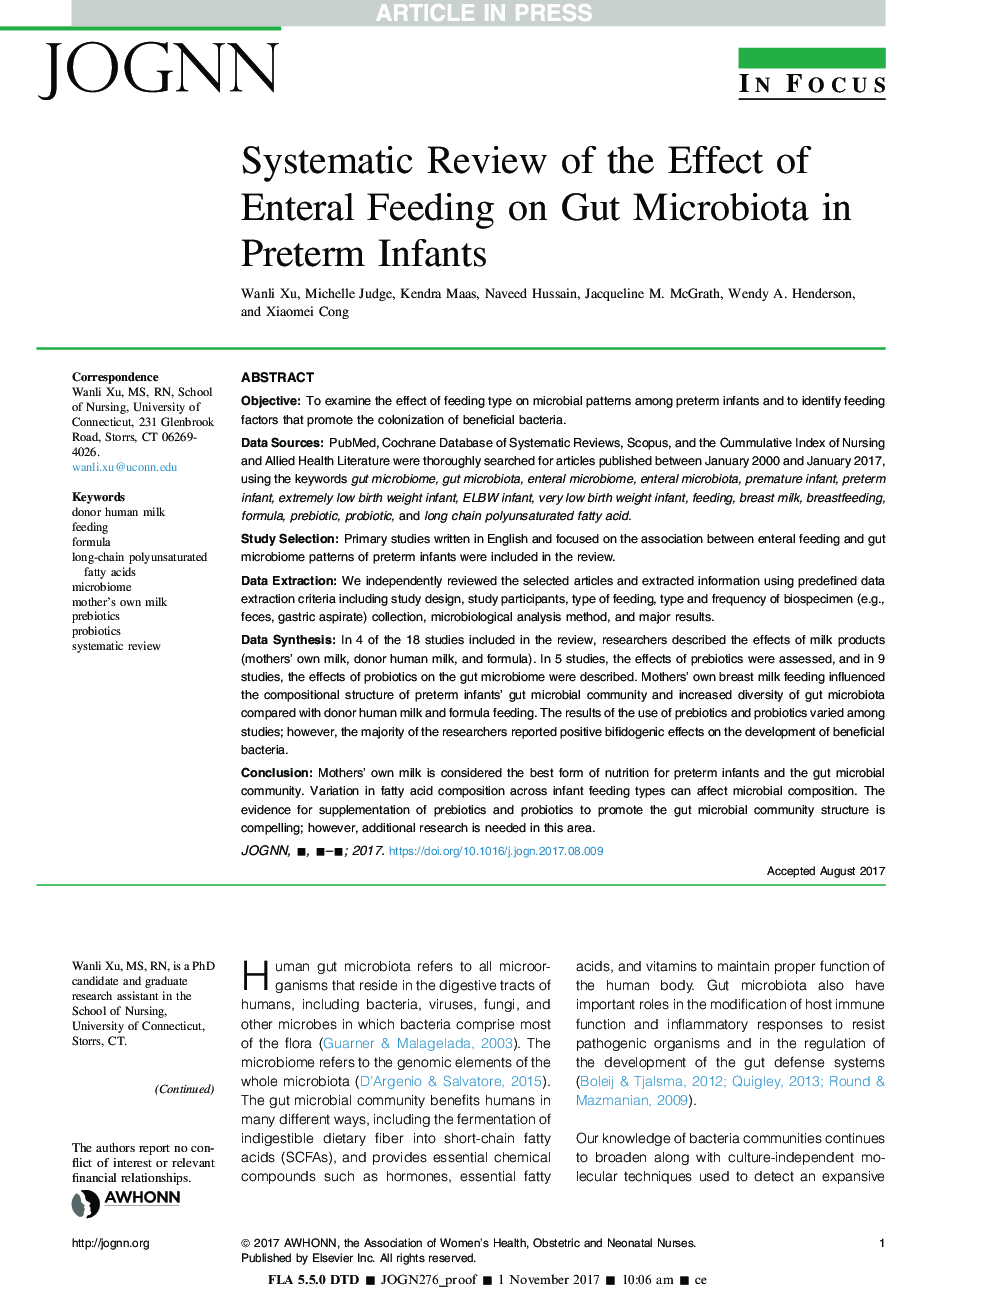 بررسی سیستماتیک اثر تغذیه انتروال بر روی میکروبیوتایس قارچی در نوزادان نارس 